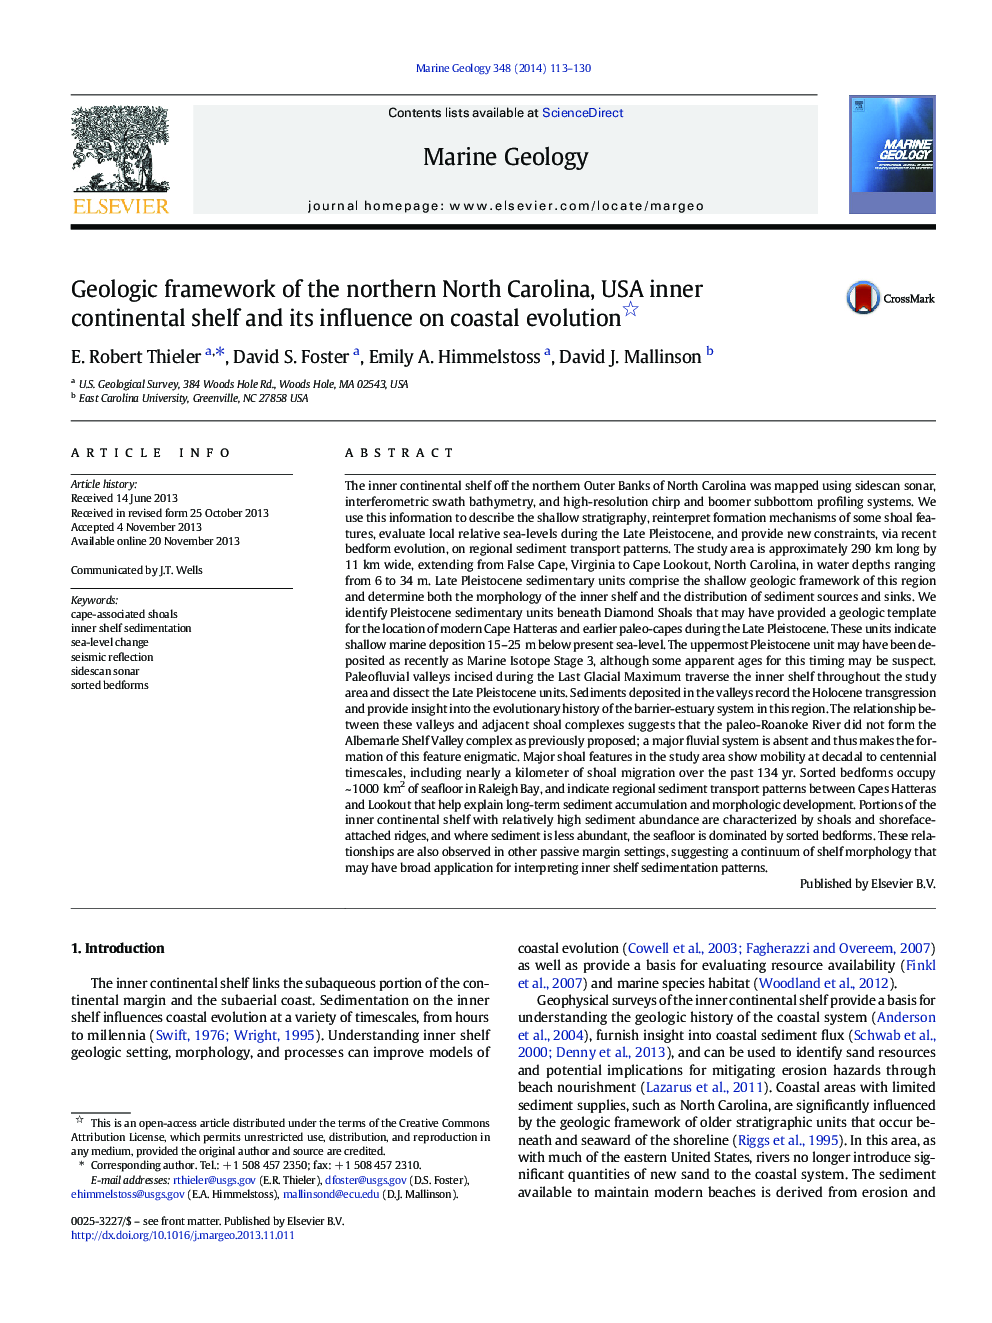 چارچوب زمین شناسی شمال کارولینای شمالی، قفسه قاره ای ایالات متحده آمریکا و تاثیر آن بر تکامل ساحلی 